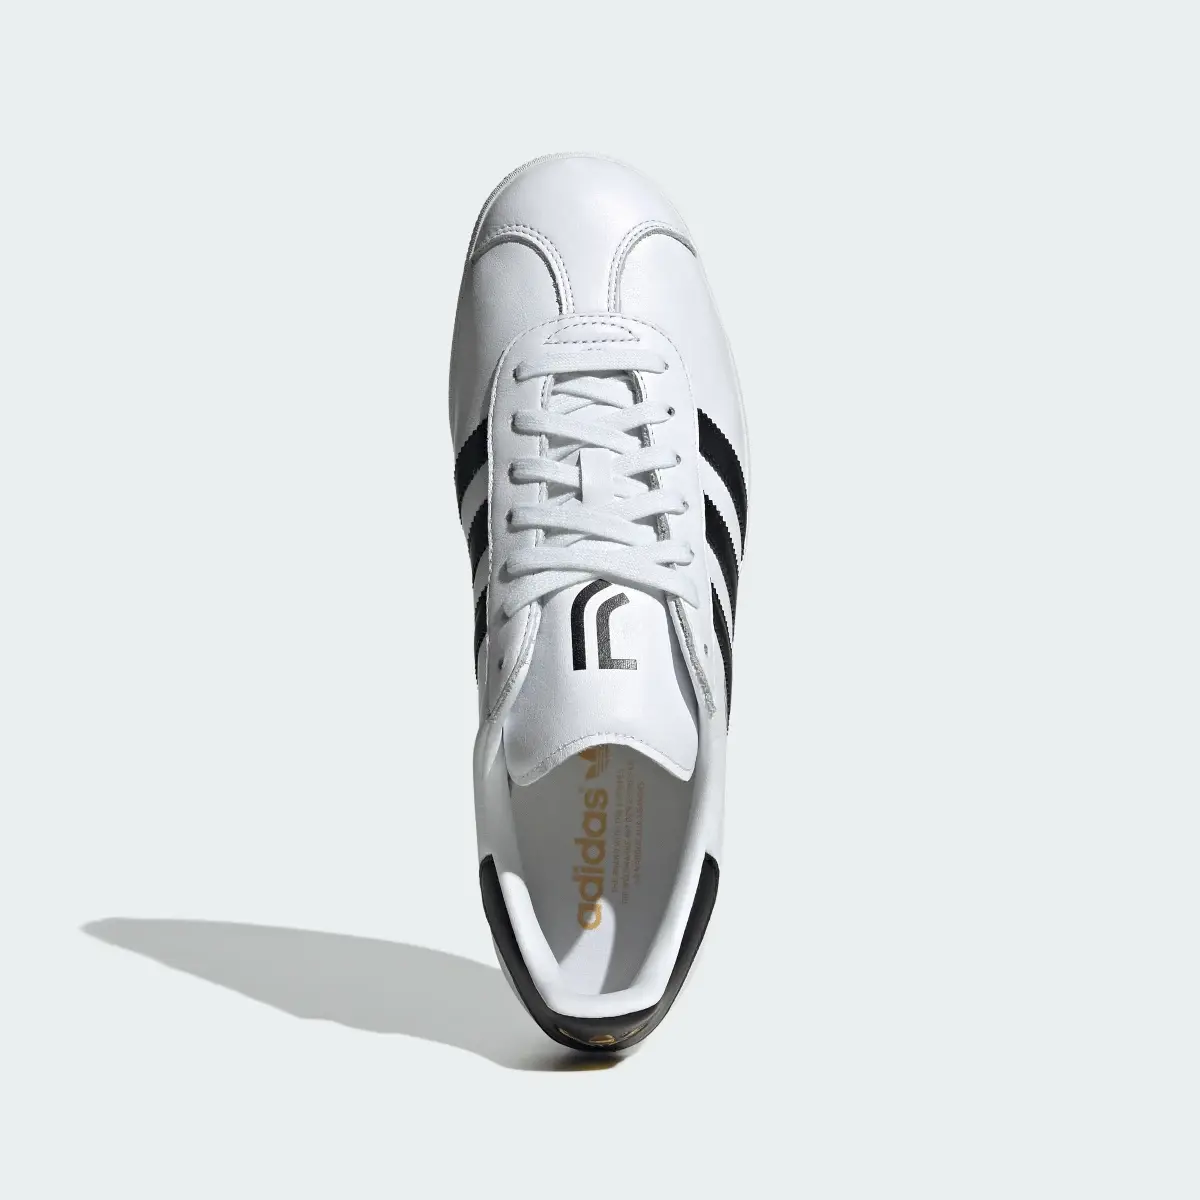 Adidas Gazelle Juventus Turin Schuh. 3